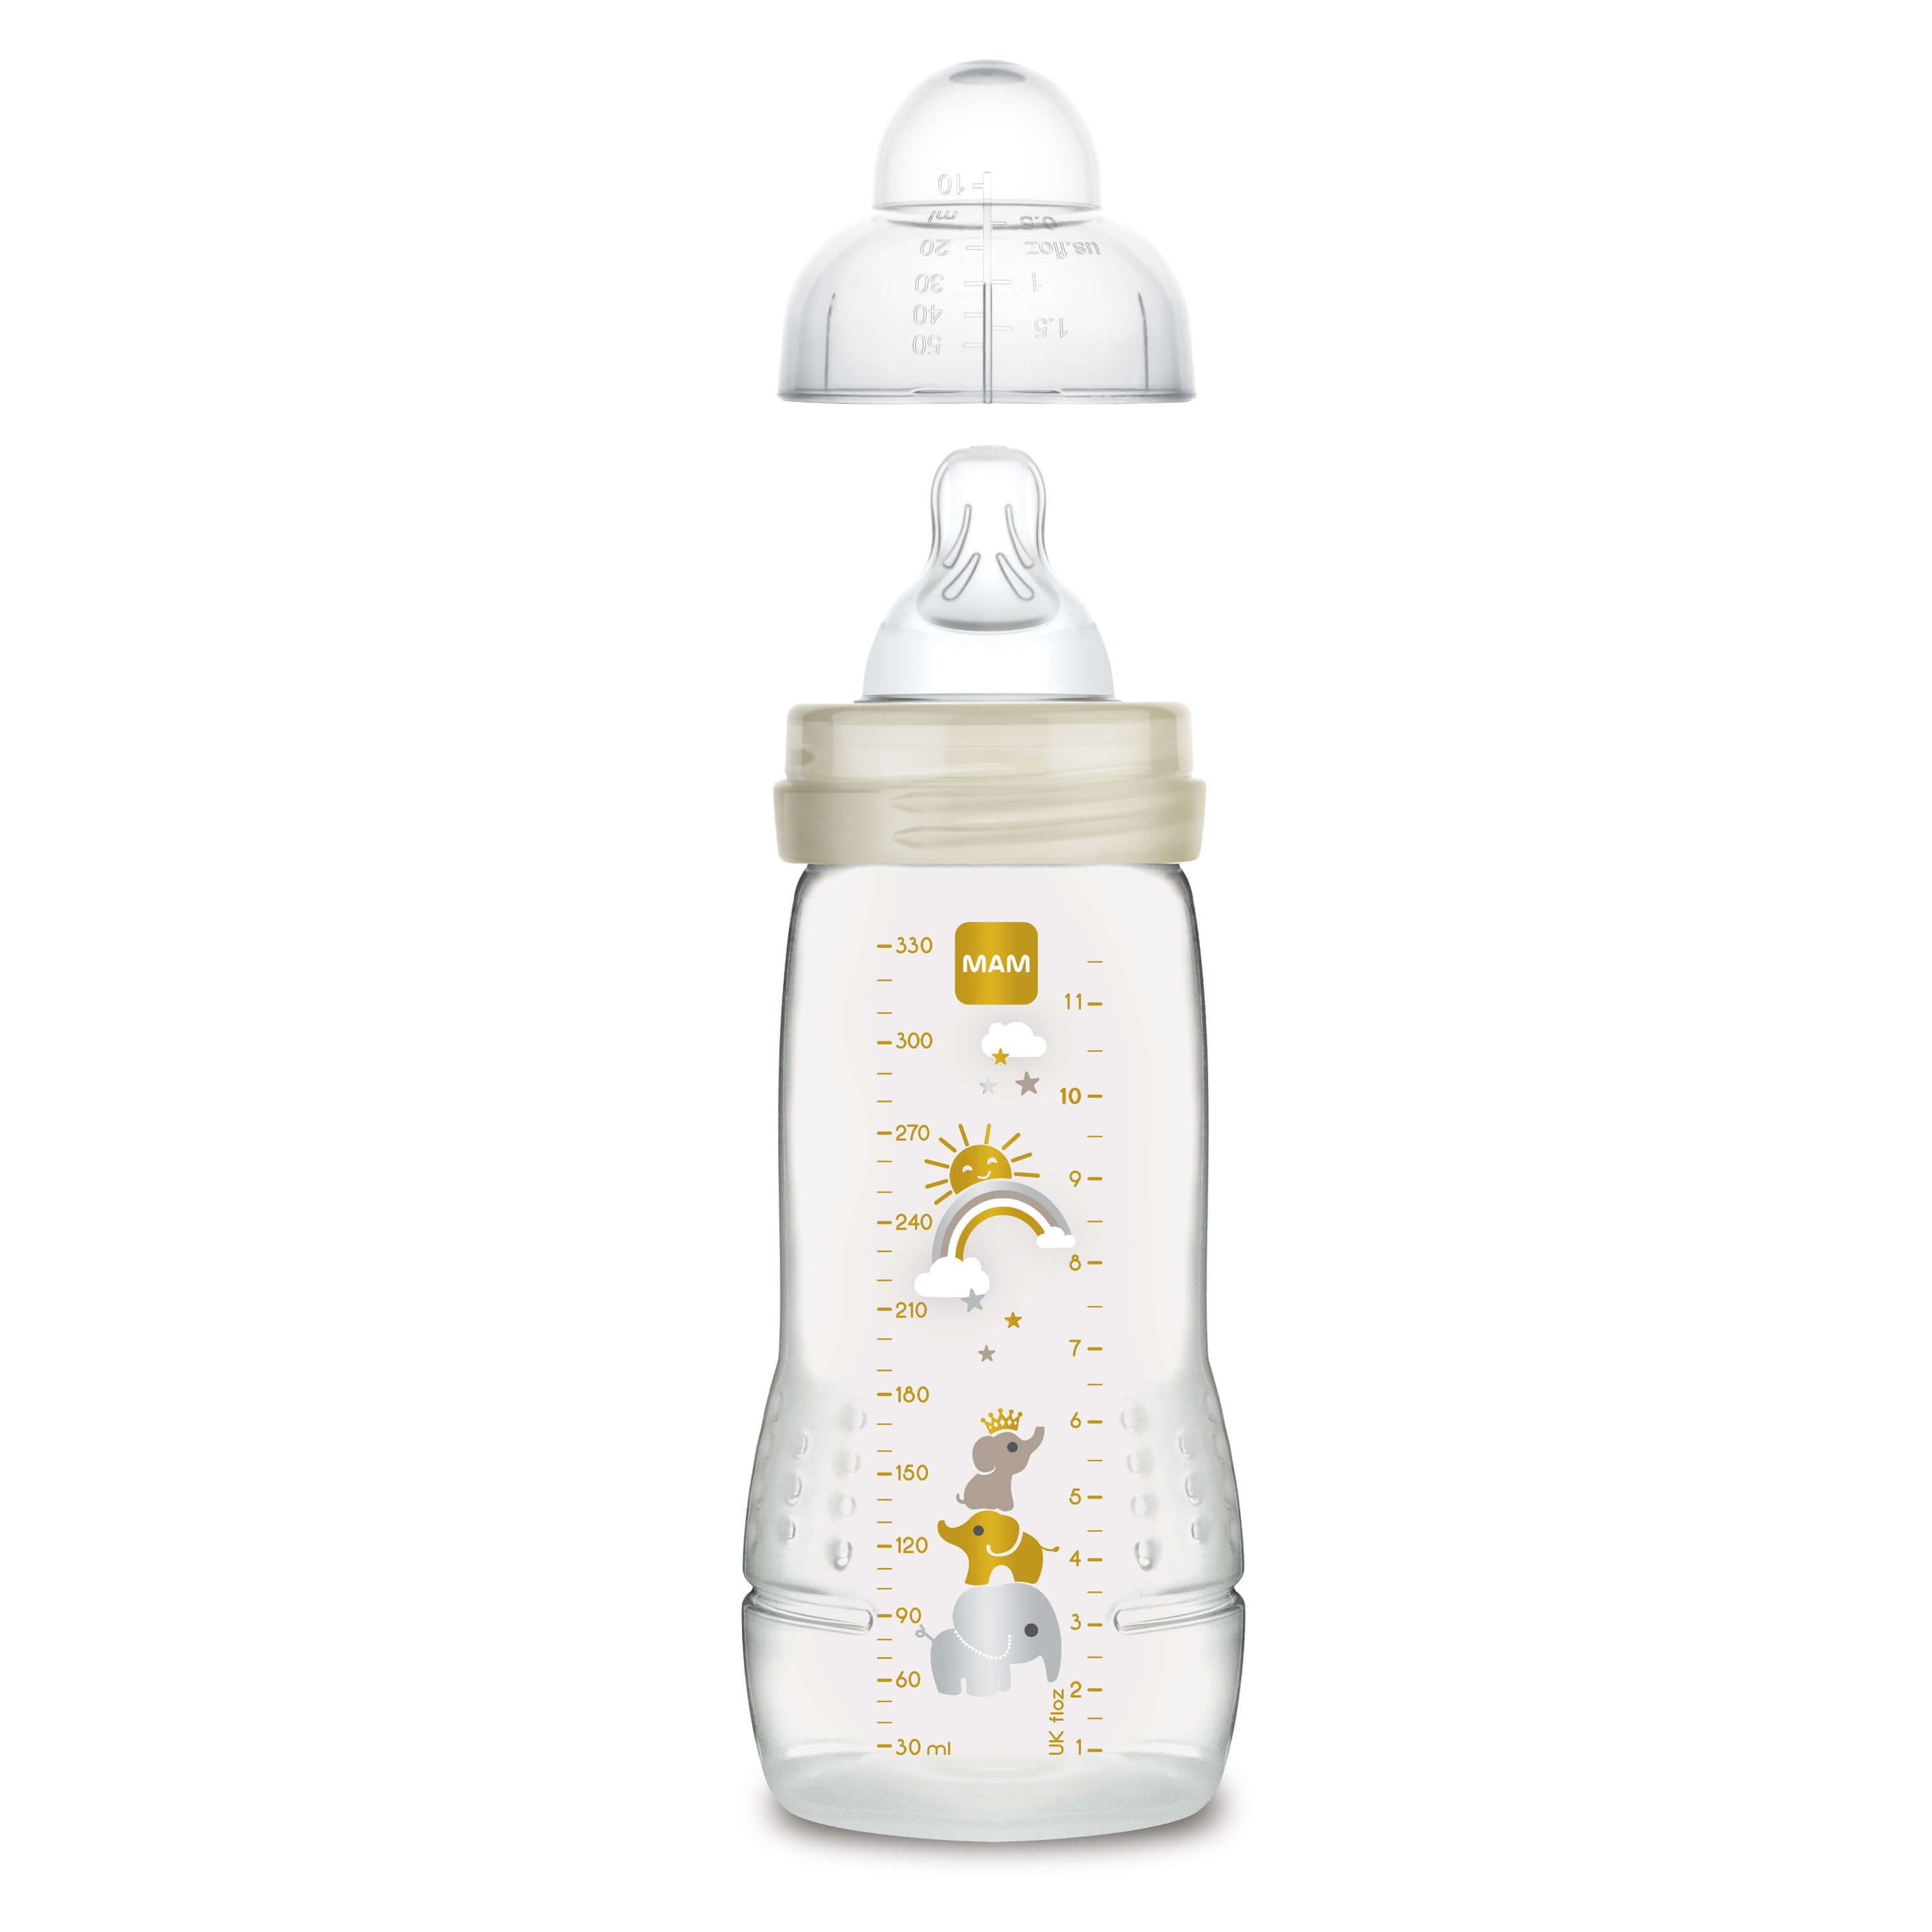 Baby Bottle 270ml Organic Garden